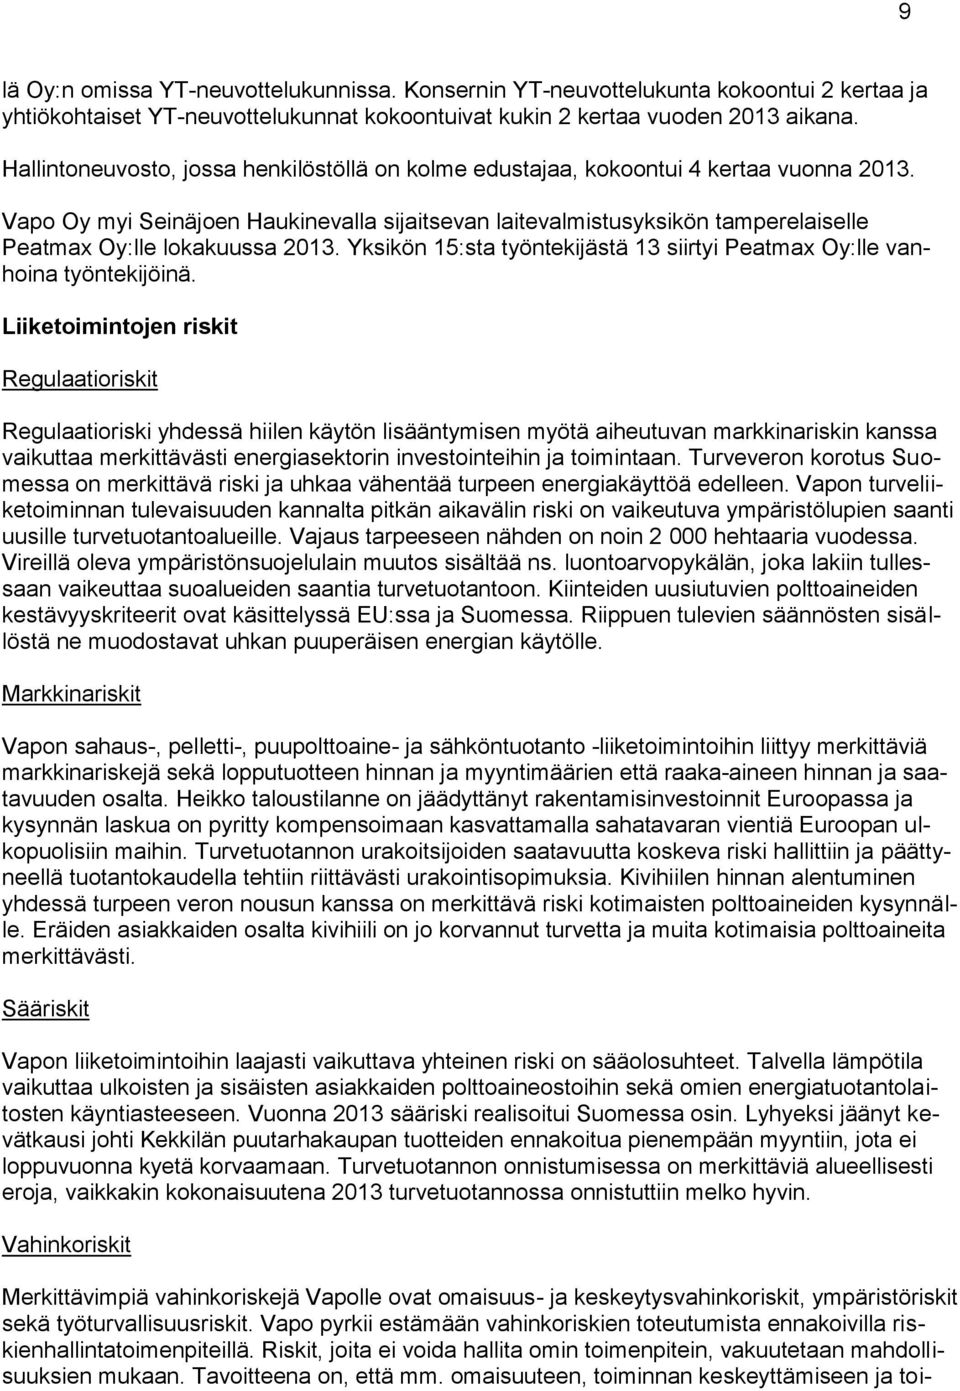 Vapo Oy myi Seinäjoen Haukinevalla sijaitsevan laitevalmistusyksikön tamperelaiselle Peatmax Oy:lle lokakuussa 2013. Yksikön 15:sta työntekijästä 13 siirtyi Peatmax Oy:lle vanhoina työntekijöinä.